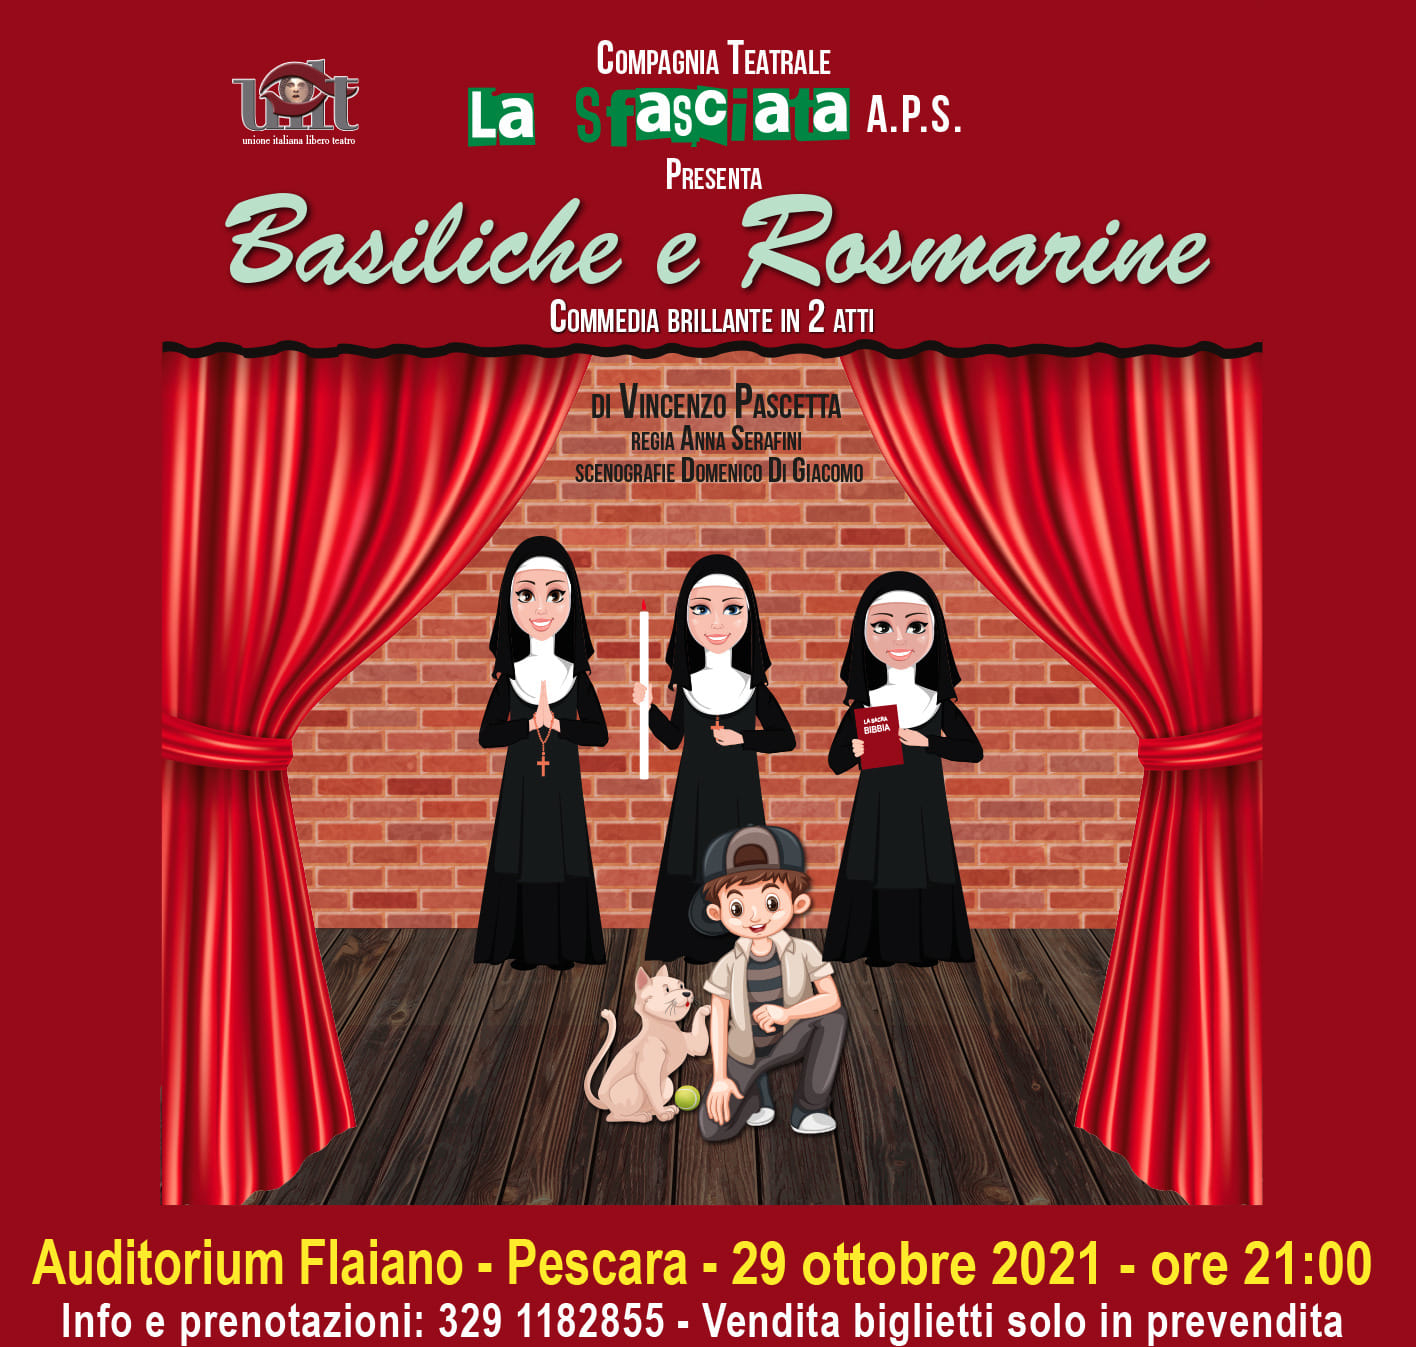 Pescara. Ritorno all’Auditorium Flaiano per la Compagnia Teatrale “La Sfasciata” con Basiliche & Rosmarine